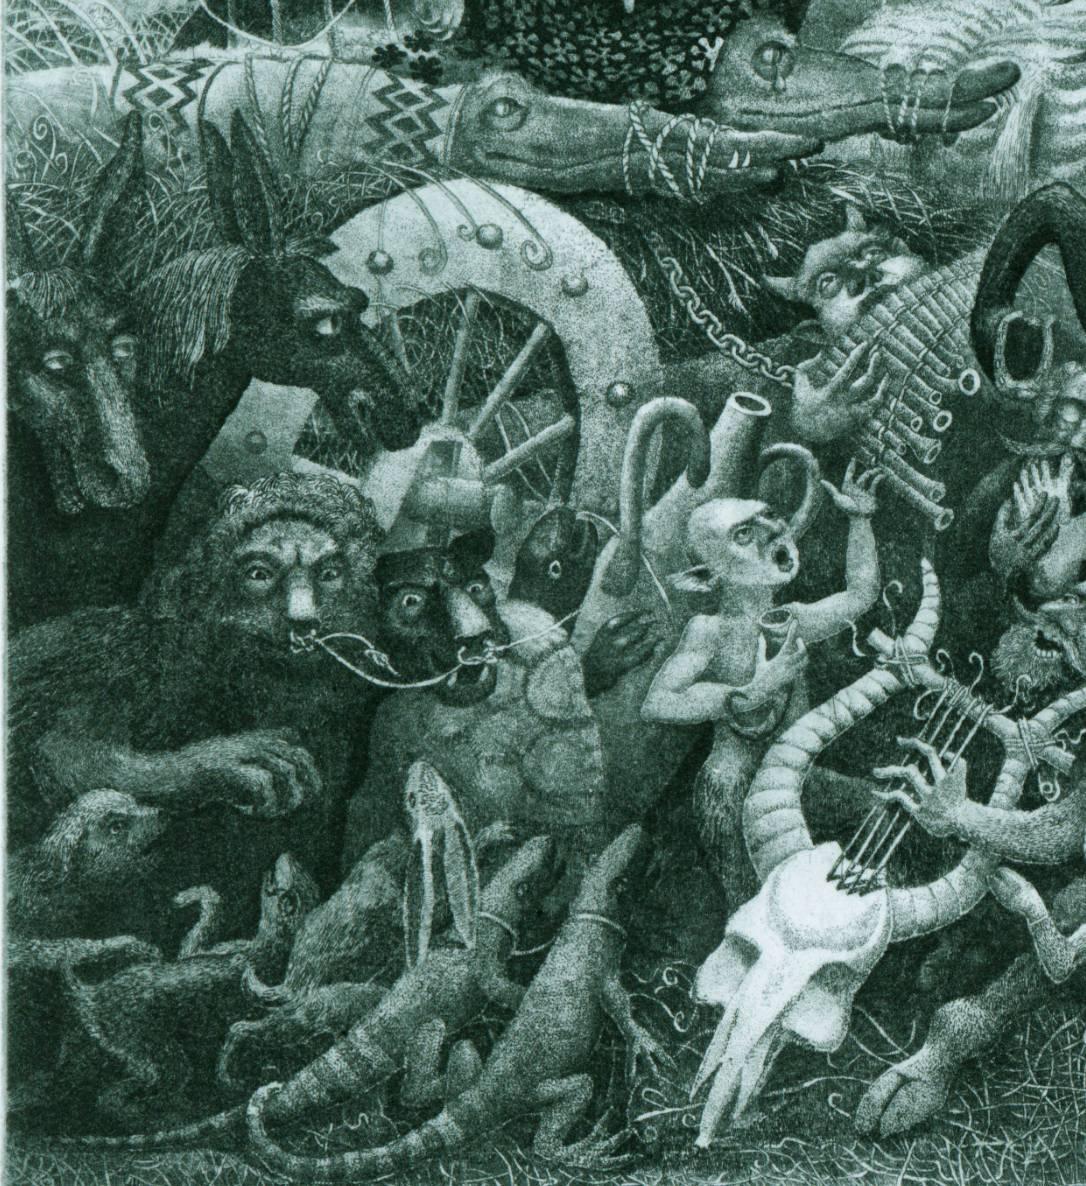 Noah's Ark - Contemporary Print by Nikolay Nikolaevich Batakov